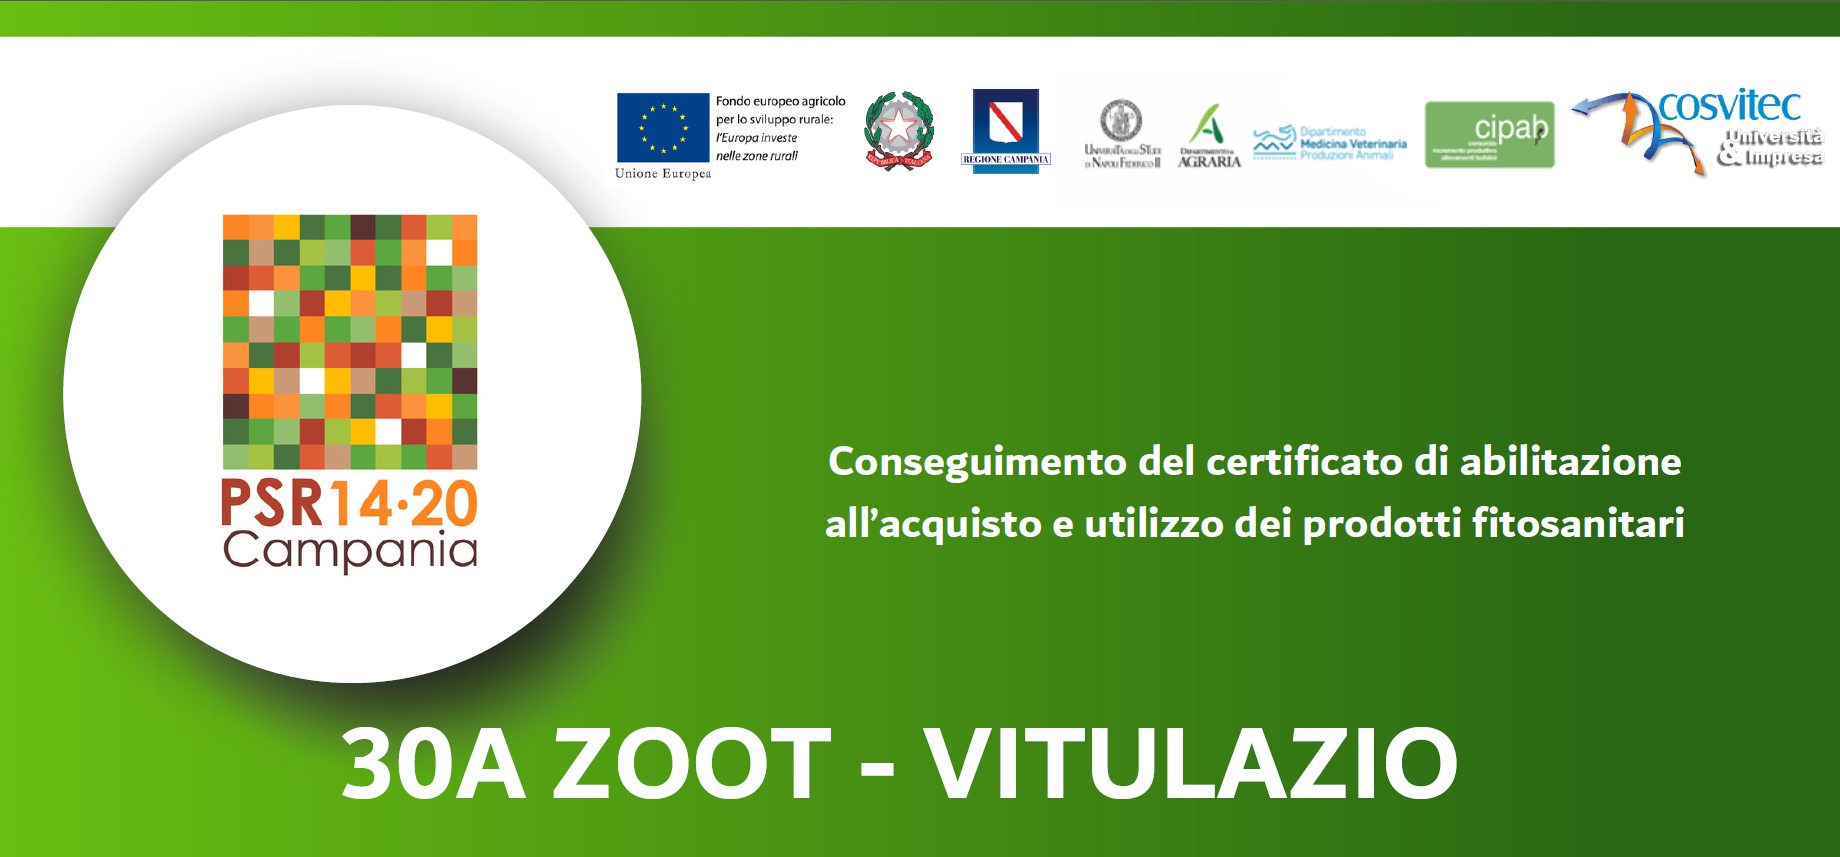 Conseguimento del certificato di abilitazione all’acquisto e utilizzo dei prodotti fitosanitari | 30A ZOOT – VITULAZIO